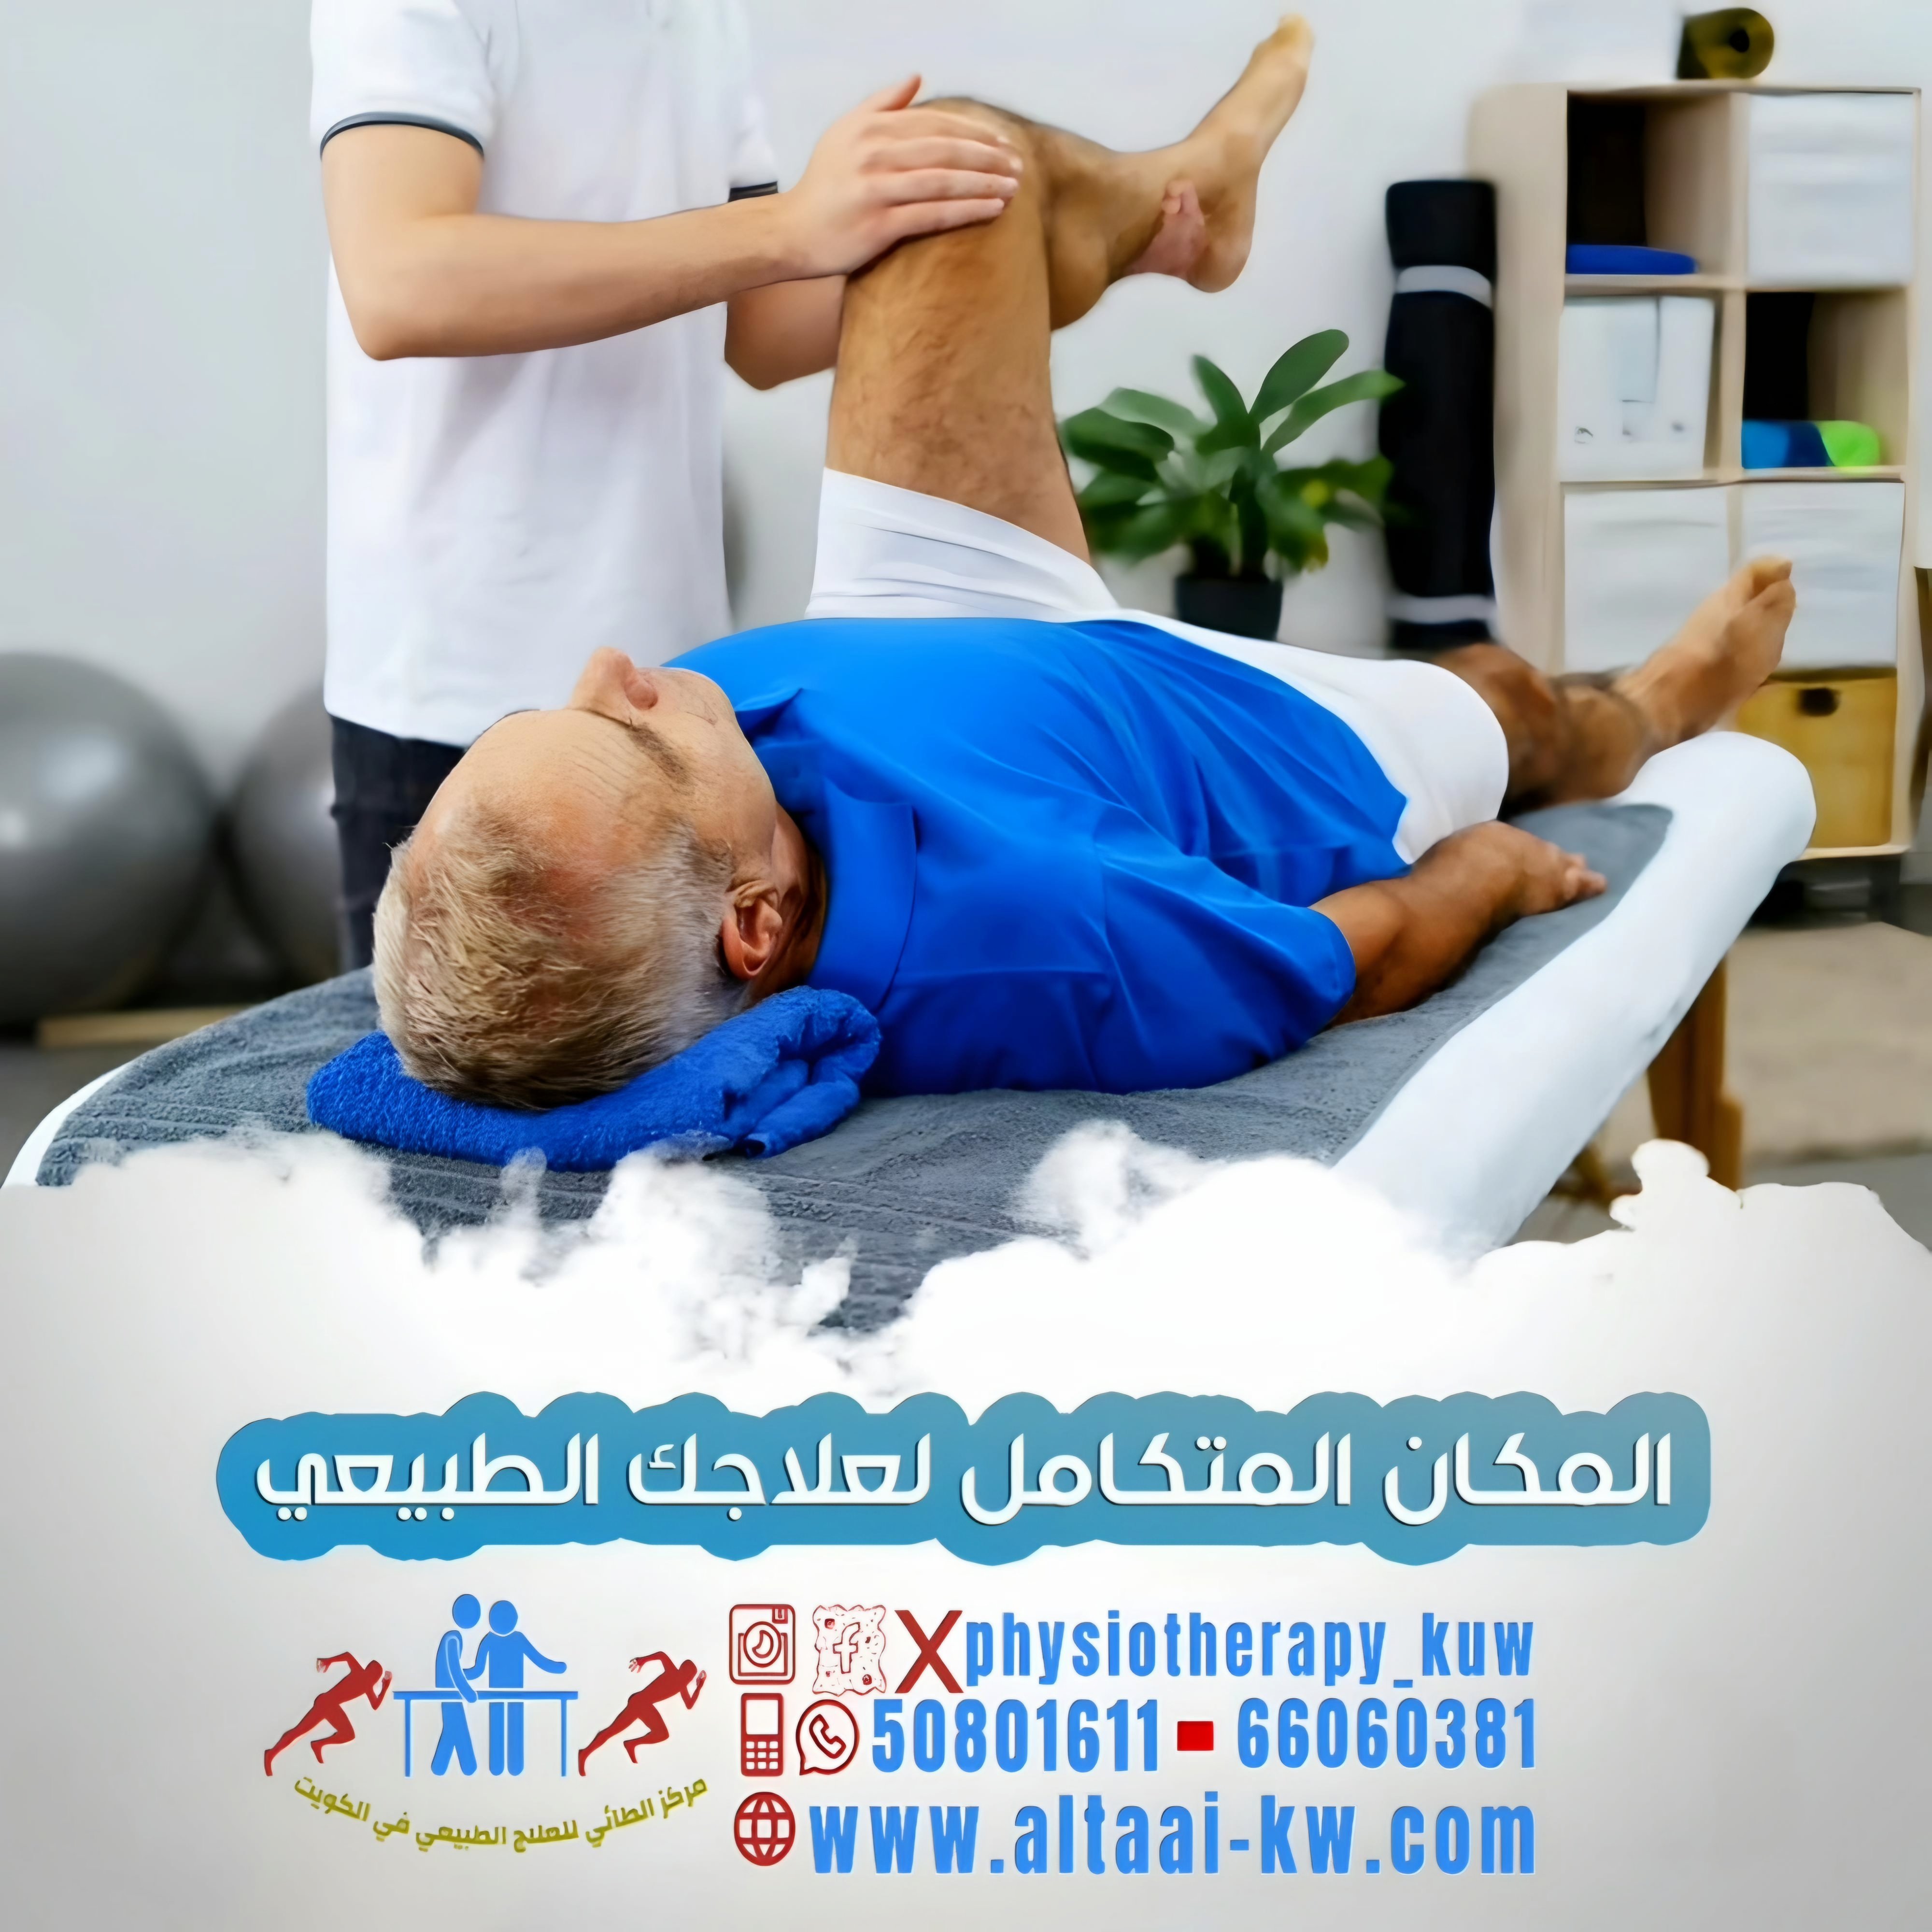 علاج فقرات الظهر بالعلاج الطبيعي في الكويت